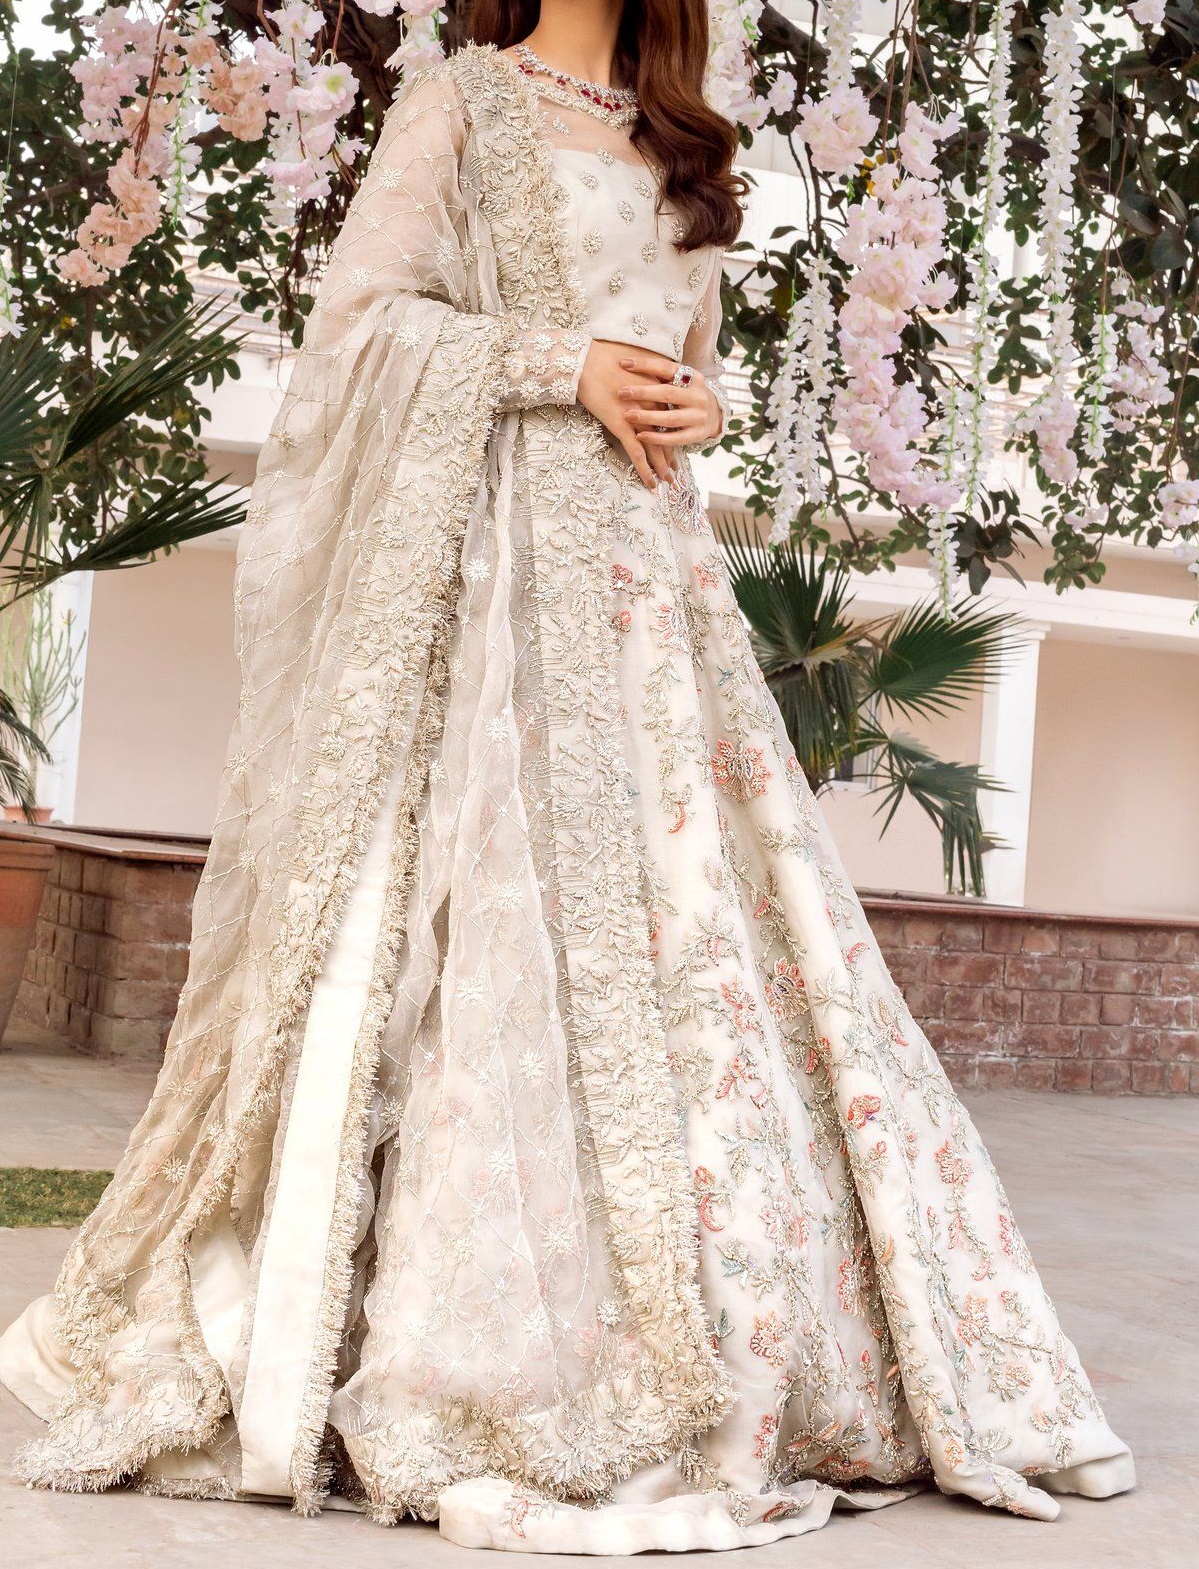 Bride❤ | Bridal dresses pakistan, Pakistani bridal dresses, Bridal dress  fashion